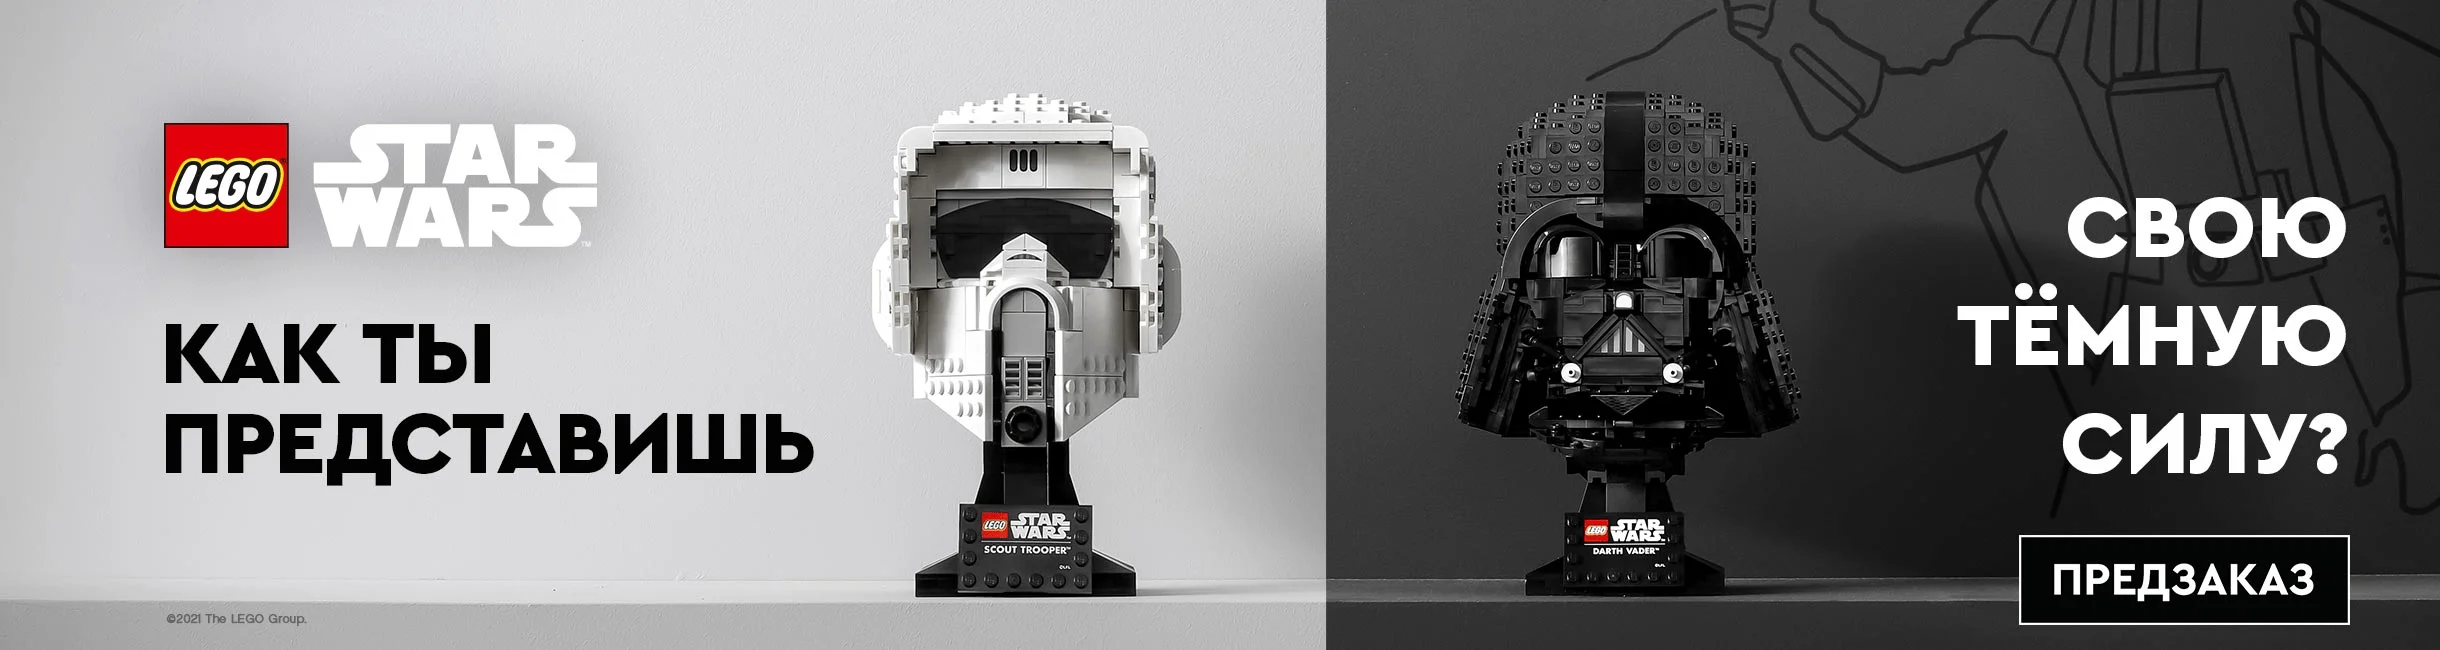 В рекламе по ошибке сравнили наборы Lego со «светлой» и «темной» стороной из Star Wars - фото 2